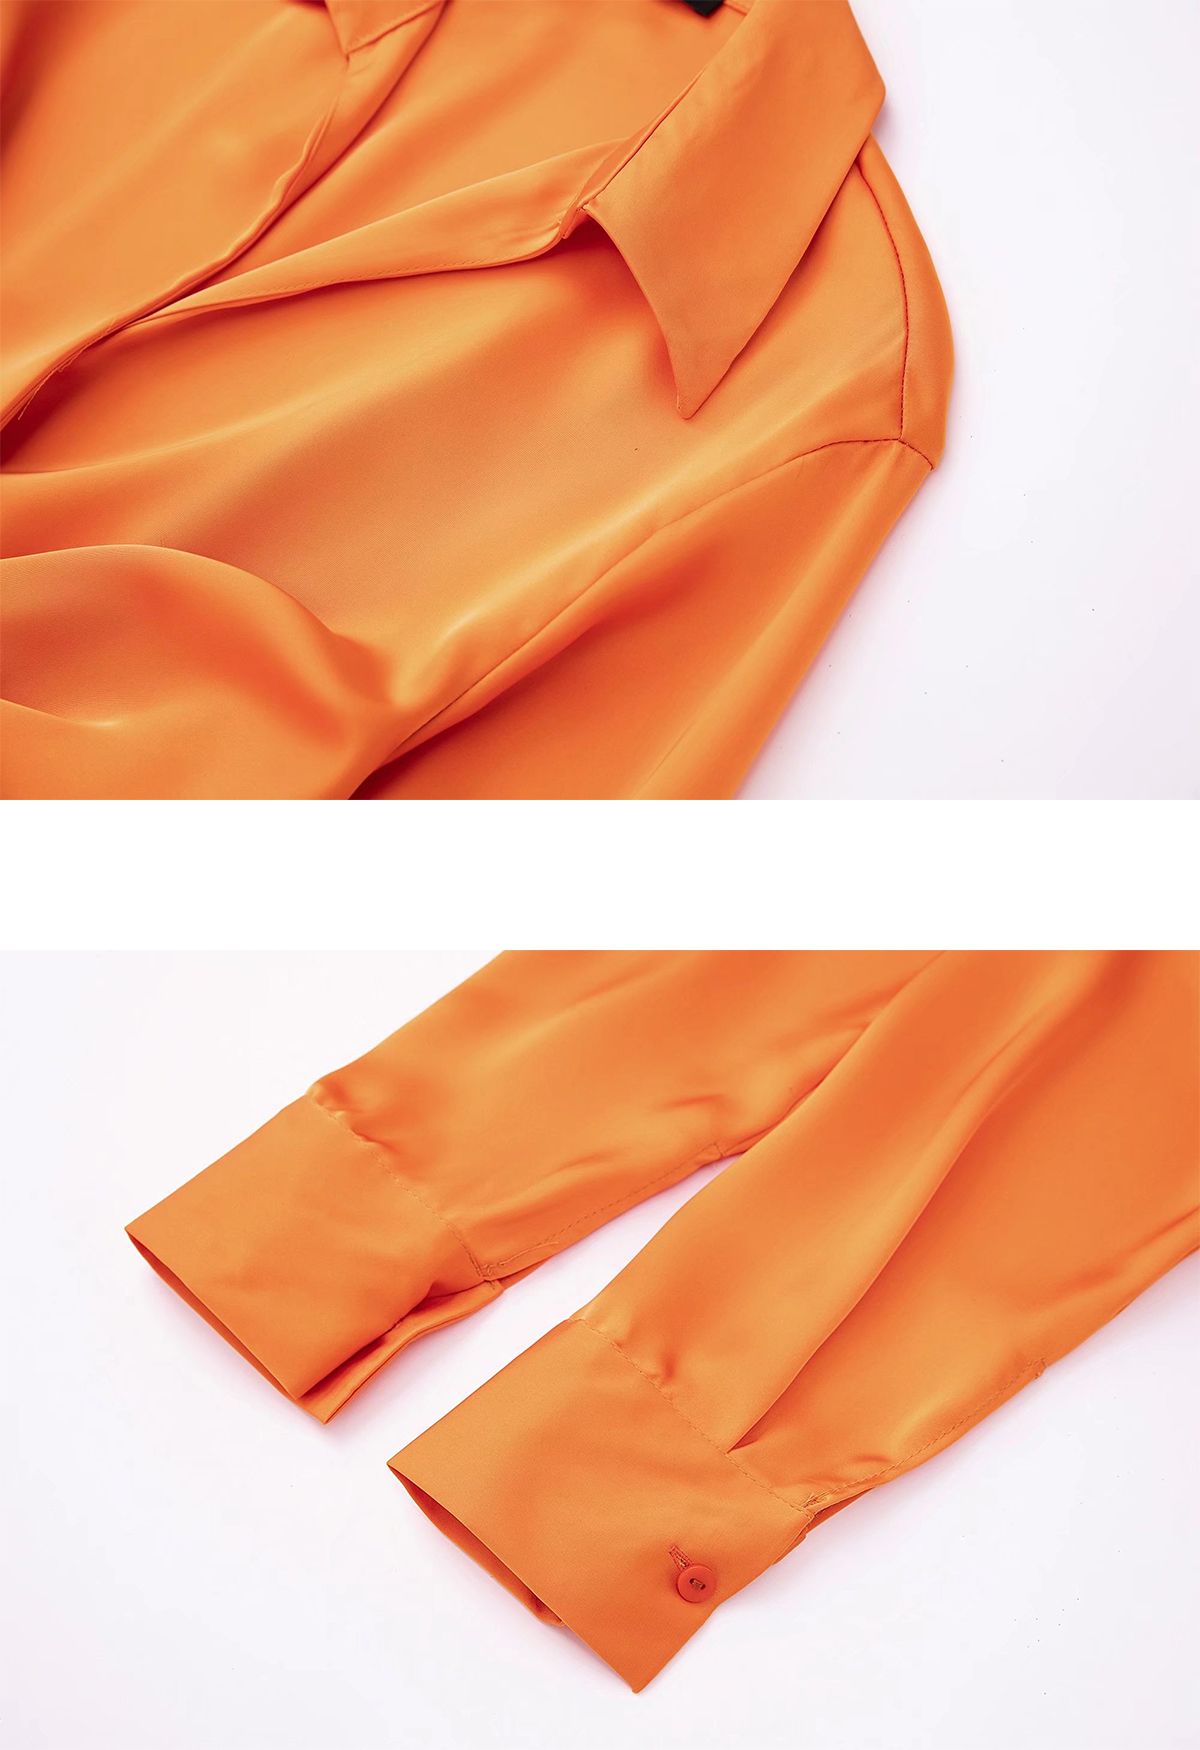 Satin-Hemdkleid mit V-Ausschnitt und Rüschen vorne in Orange